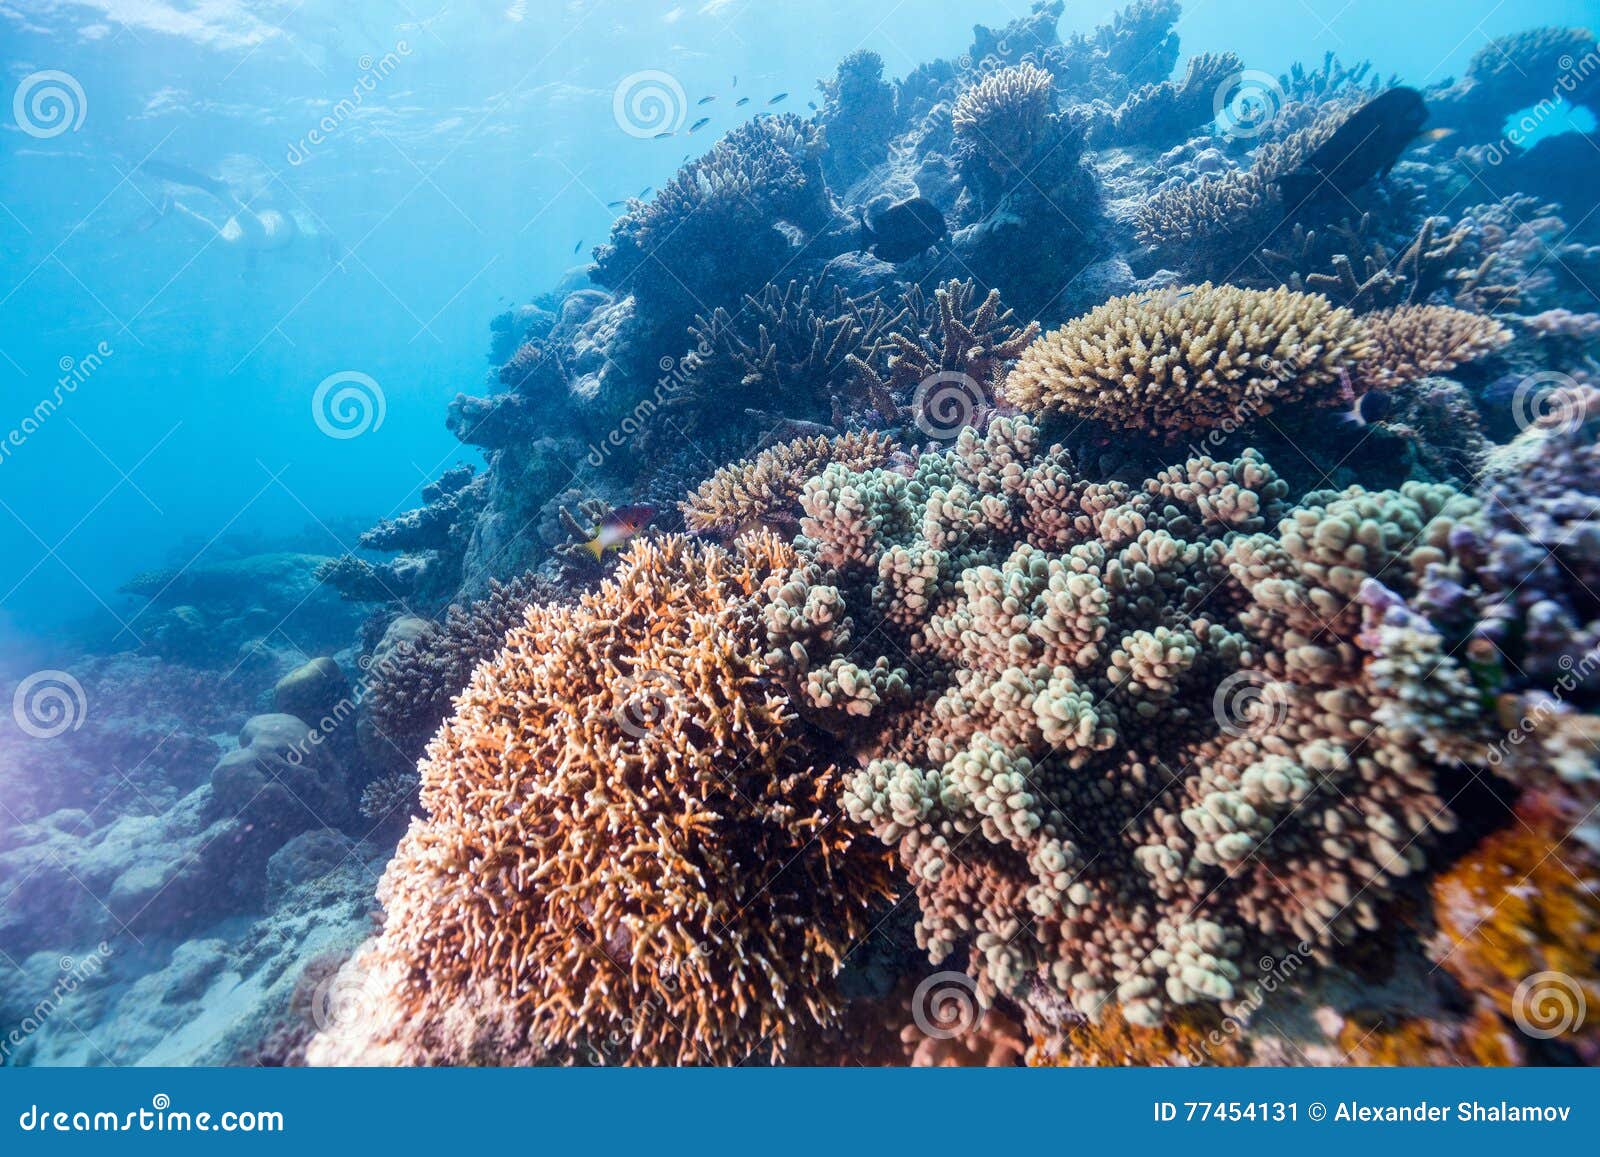 coral reef underwater